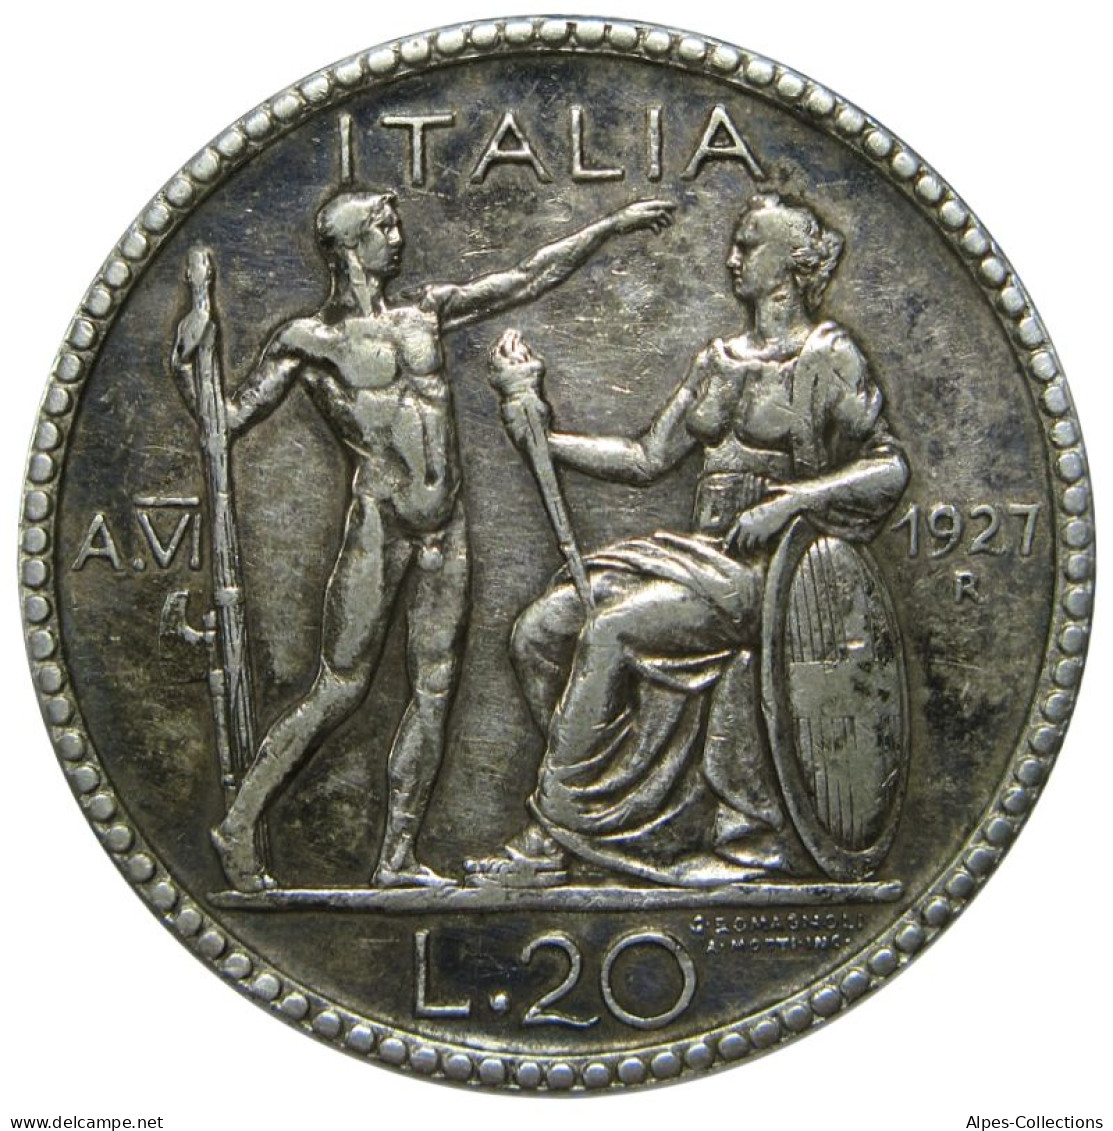 ITA069 - ITALIE - ROYAUME D'ITALIE - VICTOR-EMMANUEL III - 20 Lire 1927 R - 1900-1946 : Victor Emmanuel III & Umberto II